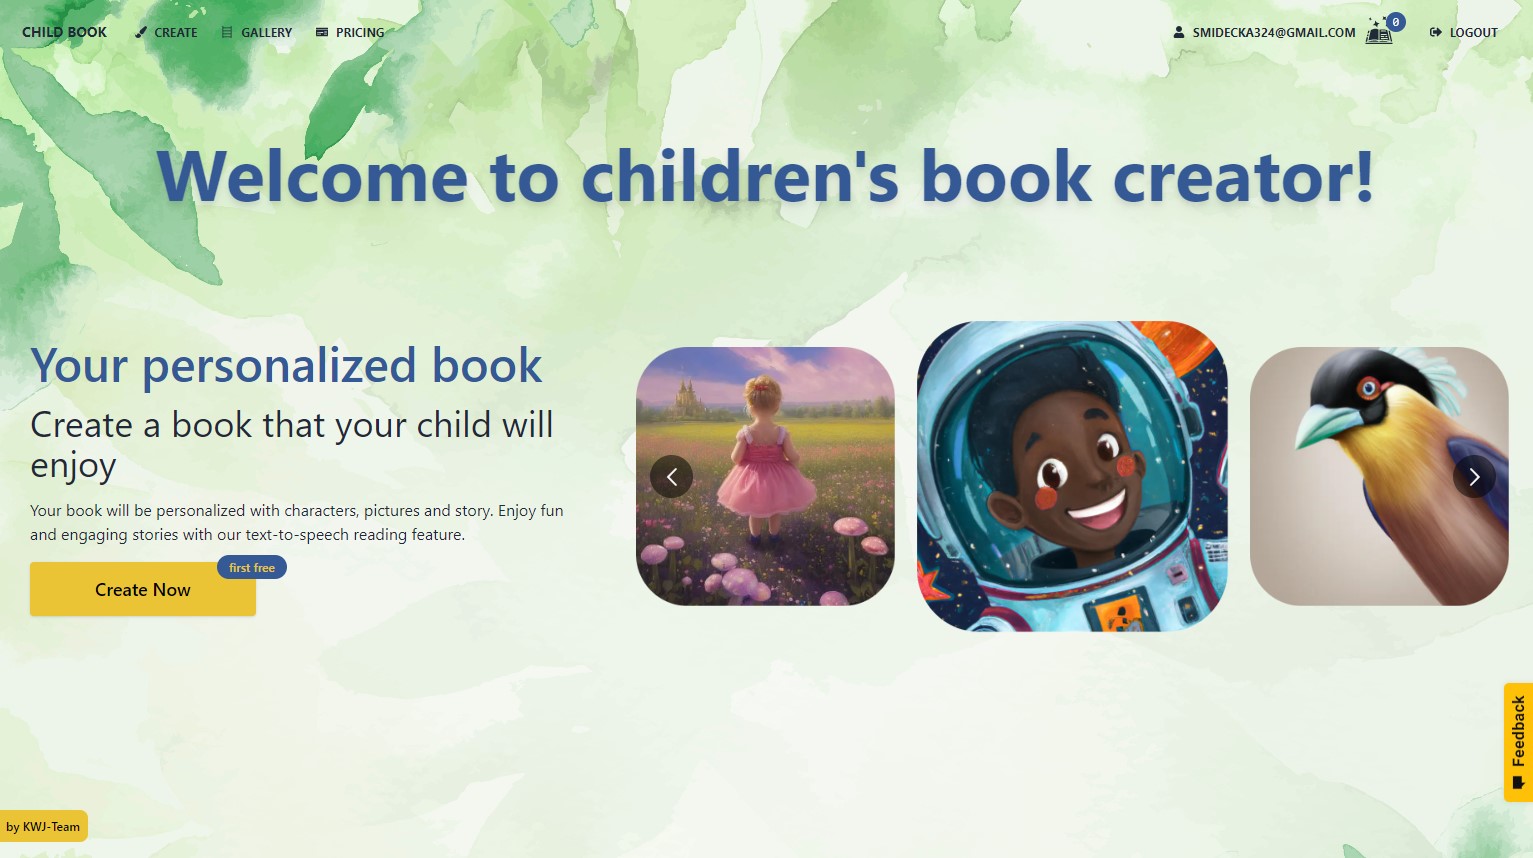 Child Book - A children's book creator tool